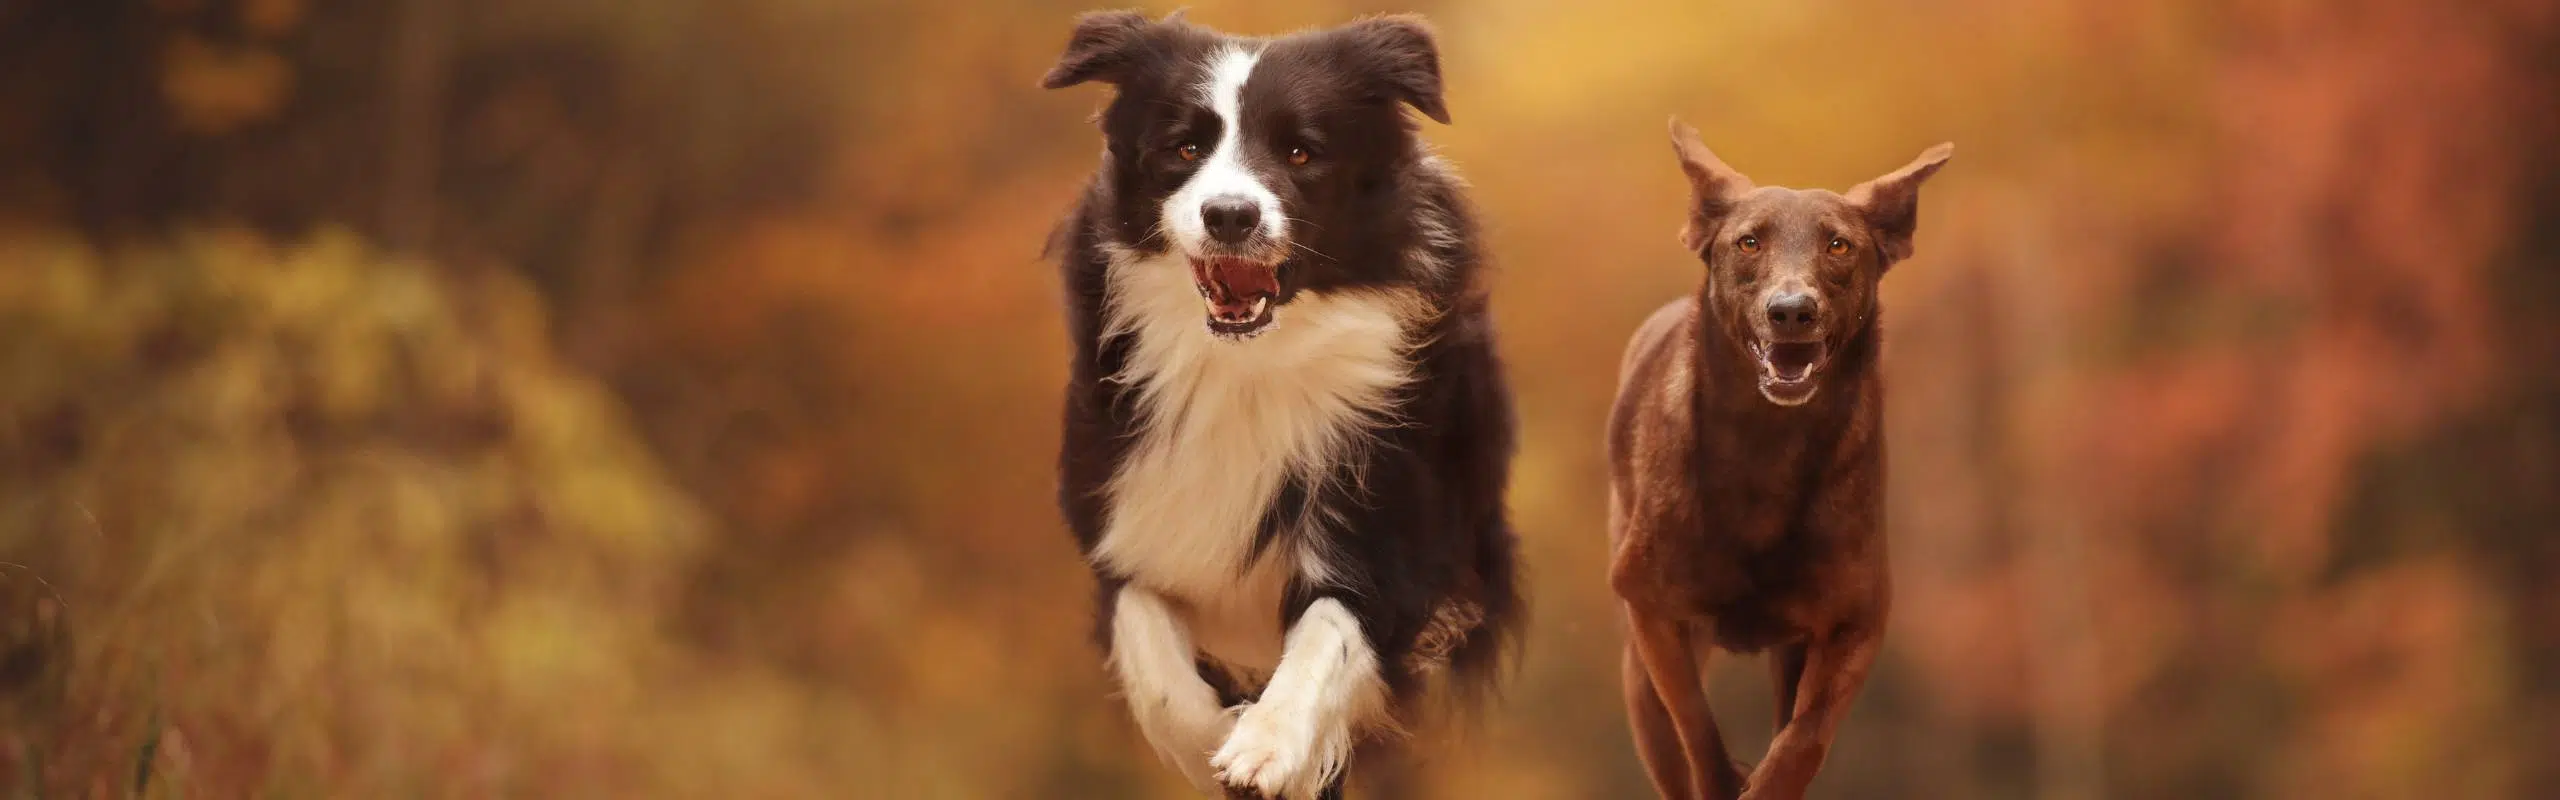 Zwei Hunde rennen motiviert auf Kamera